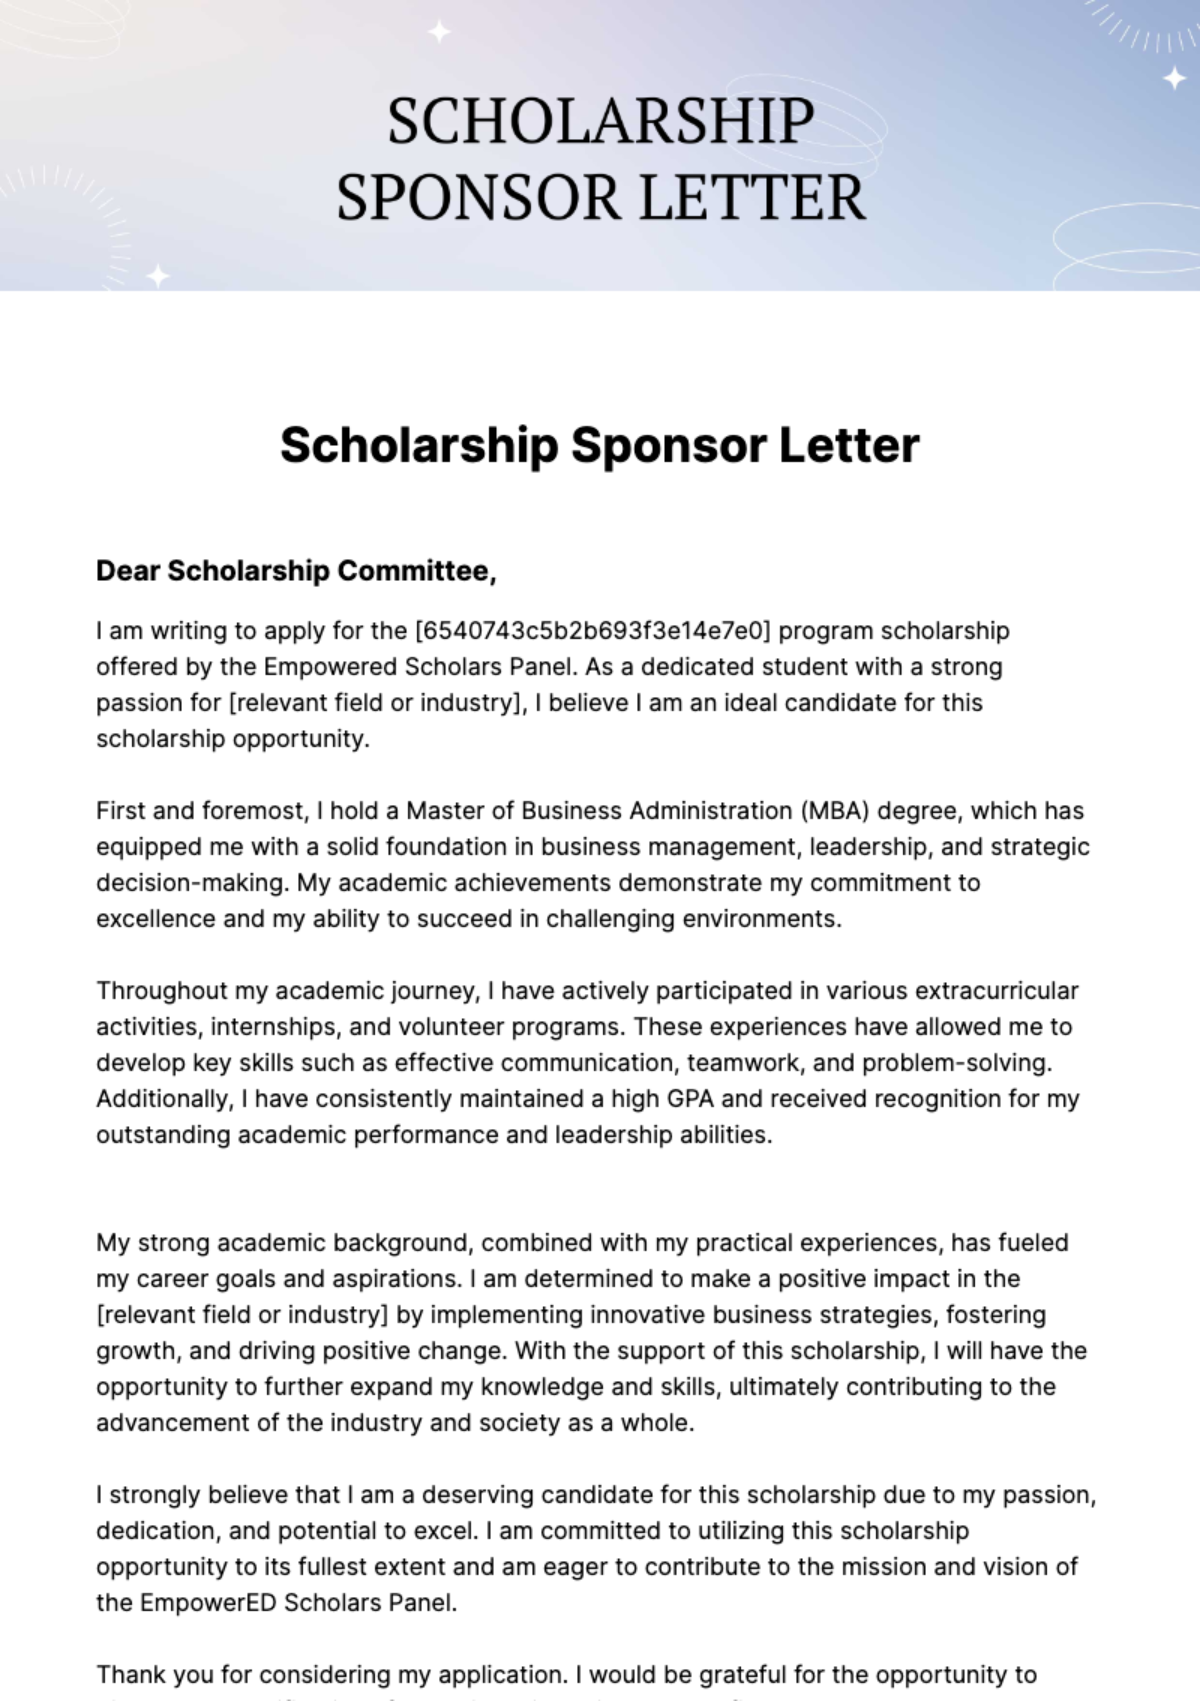 Free Scholarship Sponsor Letter Template